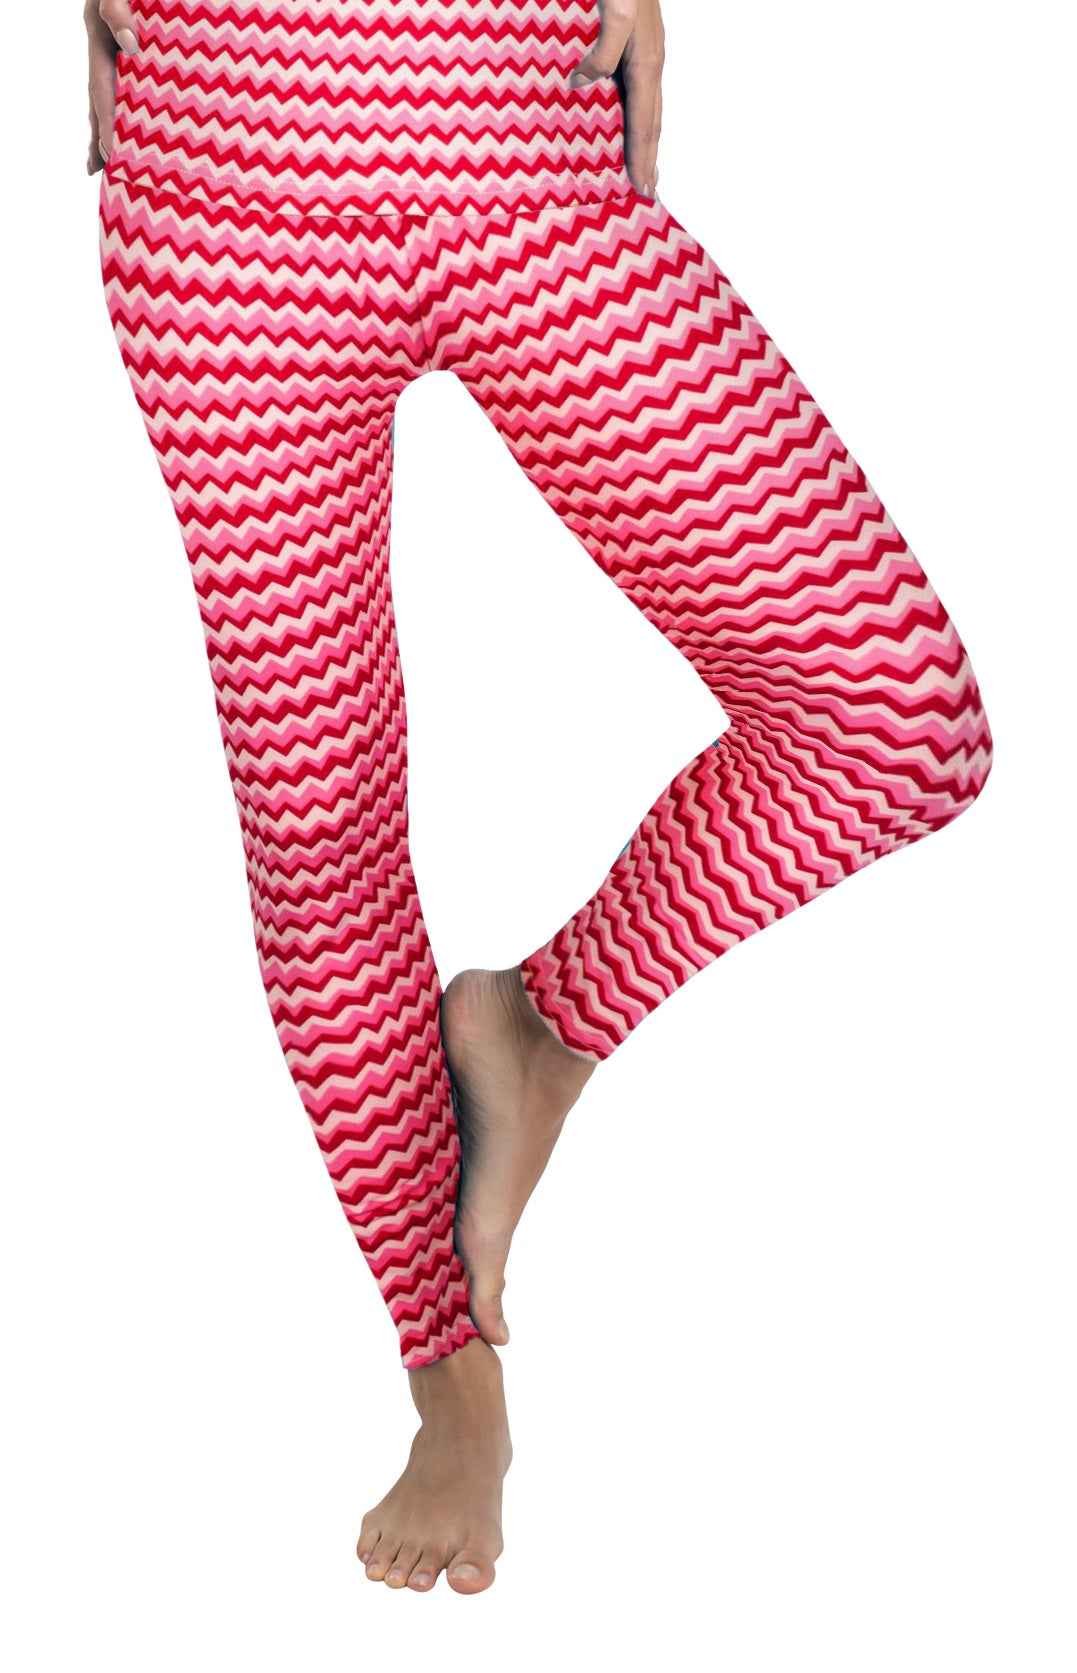 Rocky Ropa interior térmica para mujer (conjunto térmico de pantalones  largos) camisa y pantalones, capa base con leggings/pantalones de  esquí/frío